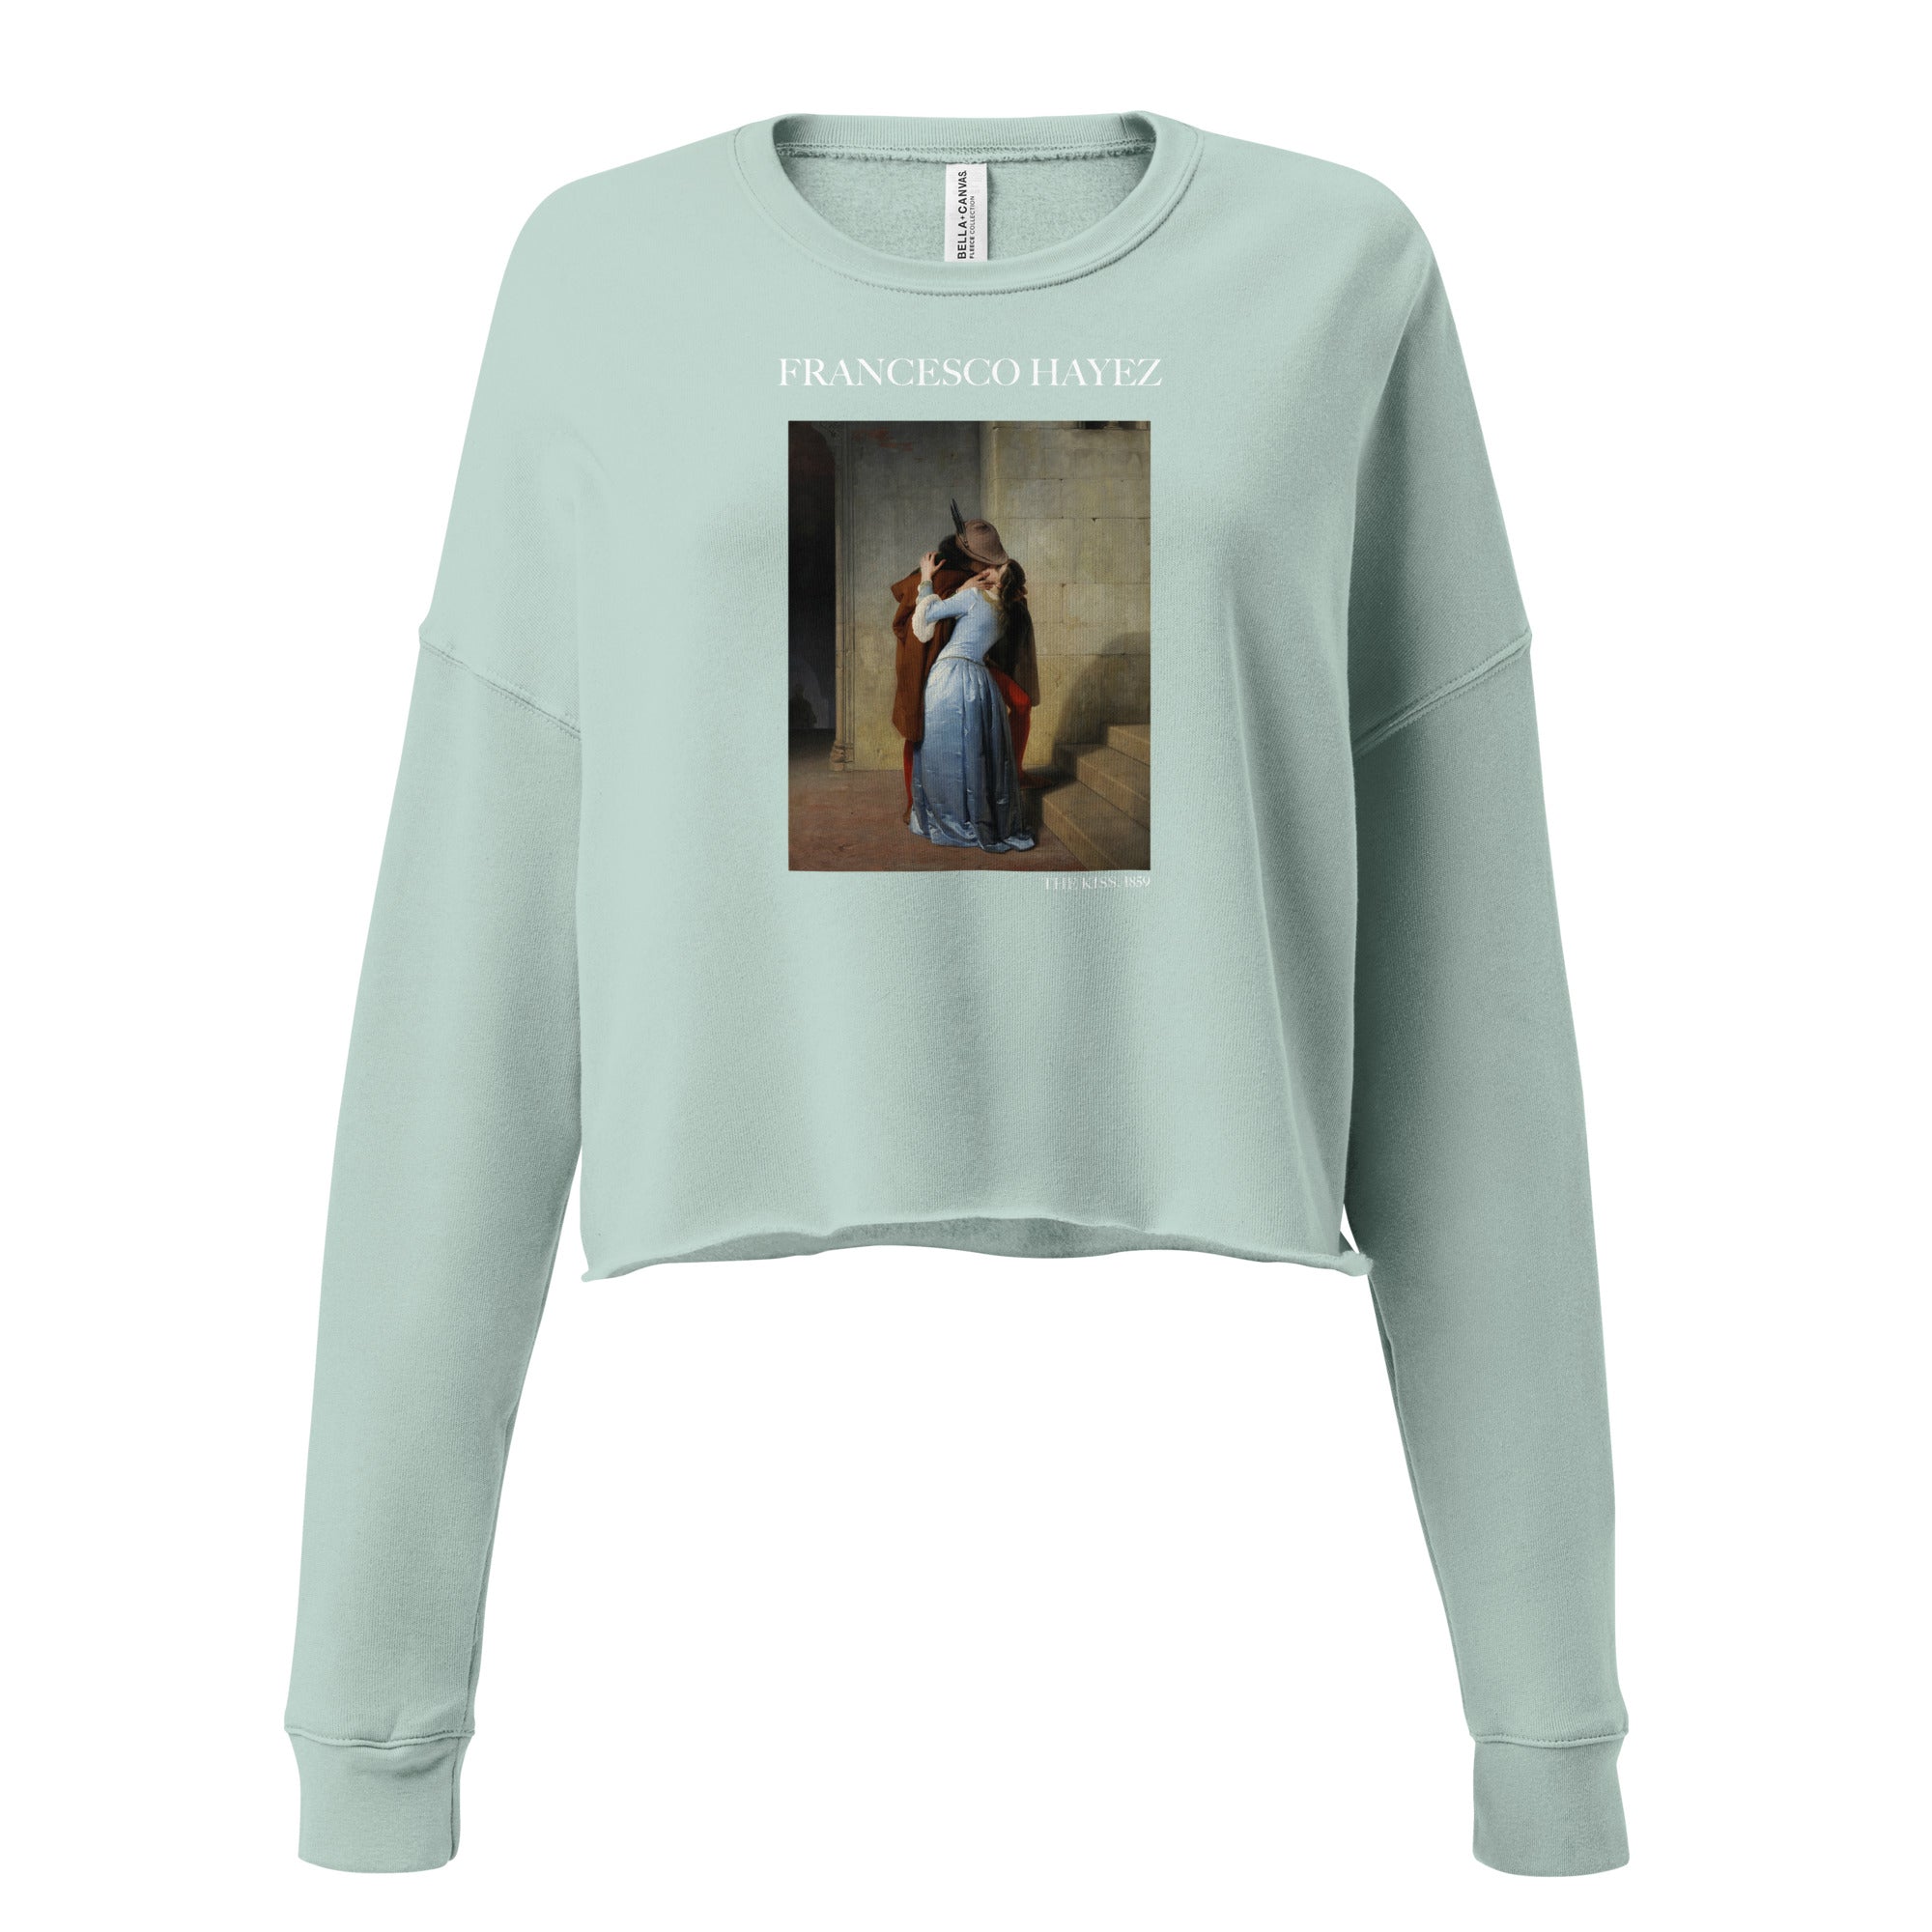 Kurzes Sweatshirt mit berühmtem Gemälde „Der Kuss“ von Francesco Hayez | Kurzes Sweatshirt mit Premium-Kunstmotiv